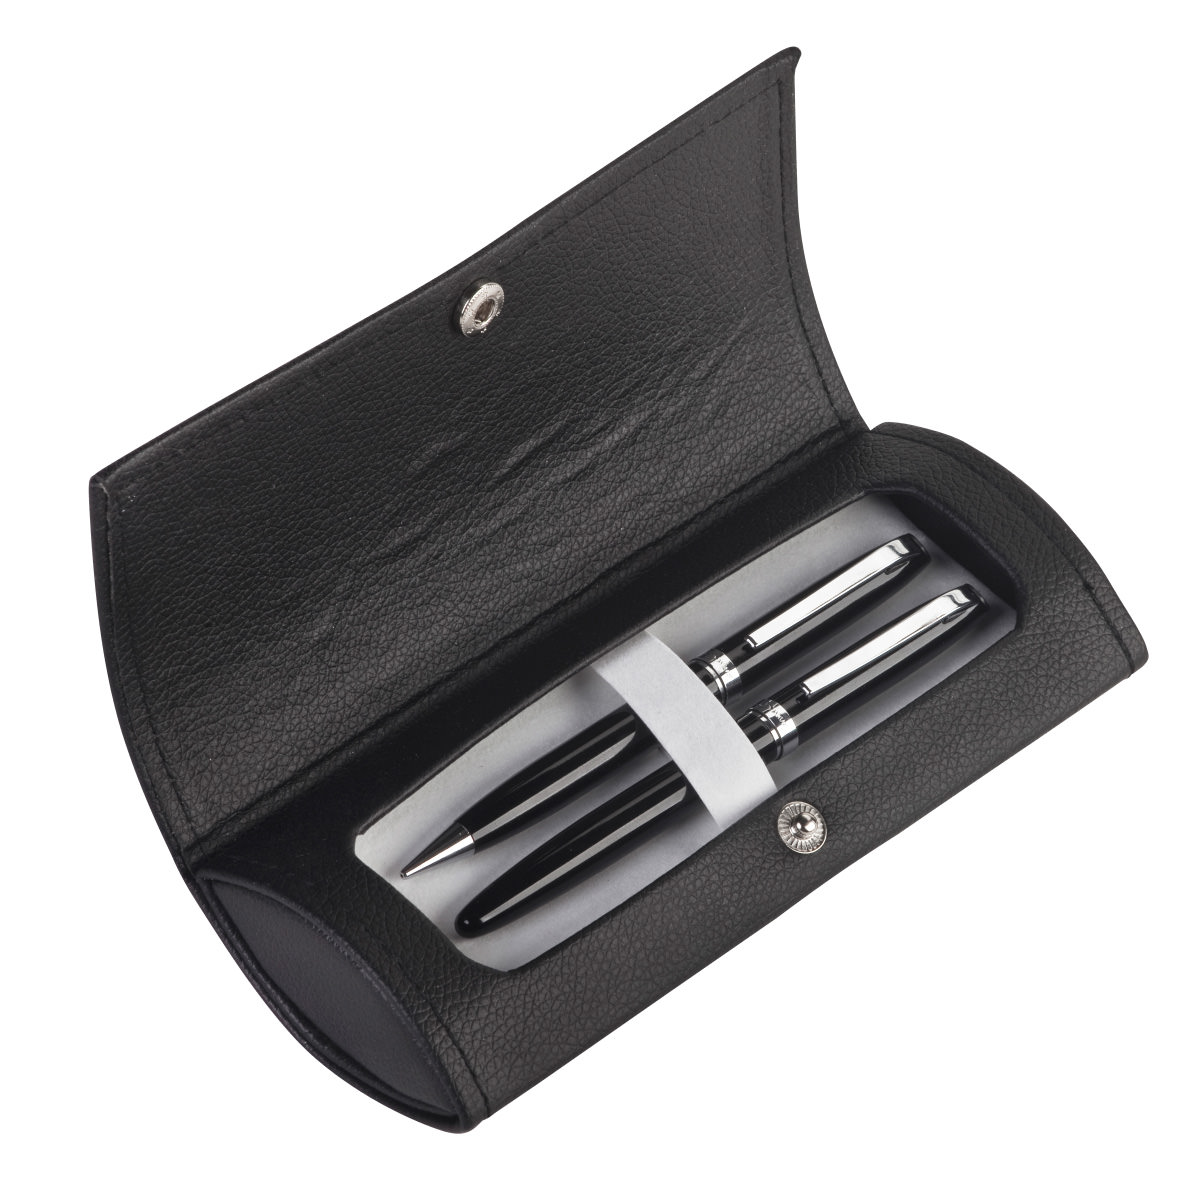 קופסה מהודרת לעט, זוג או 3 עטים - אלבמה